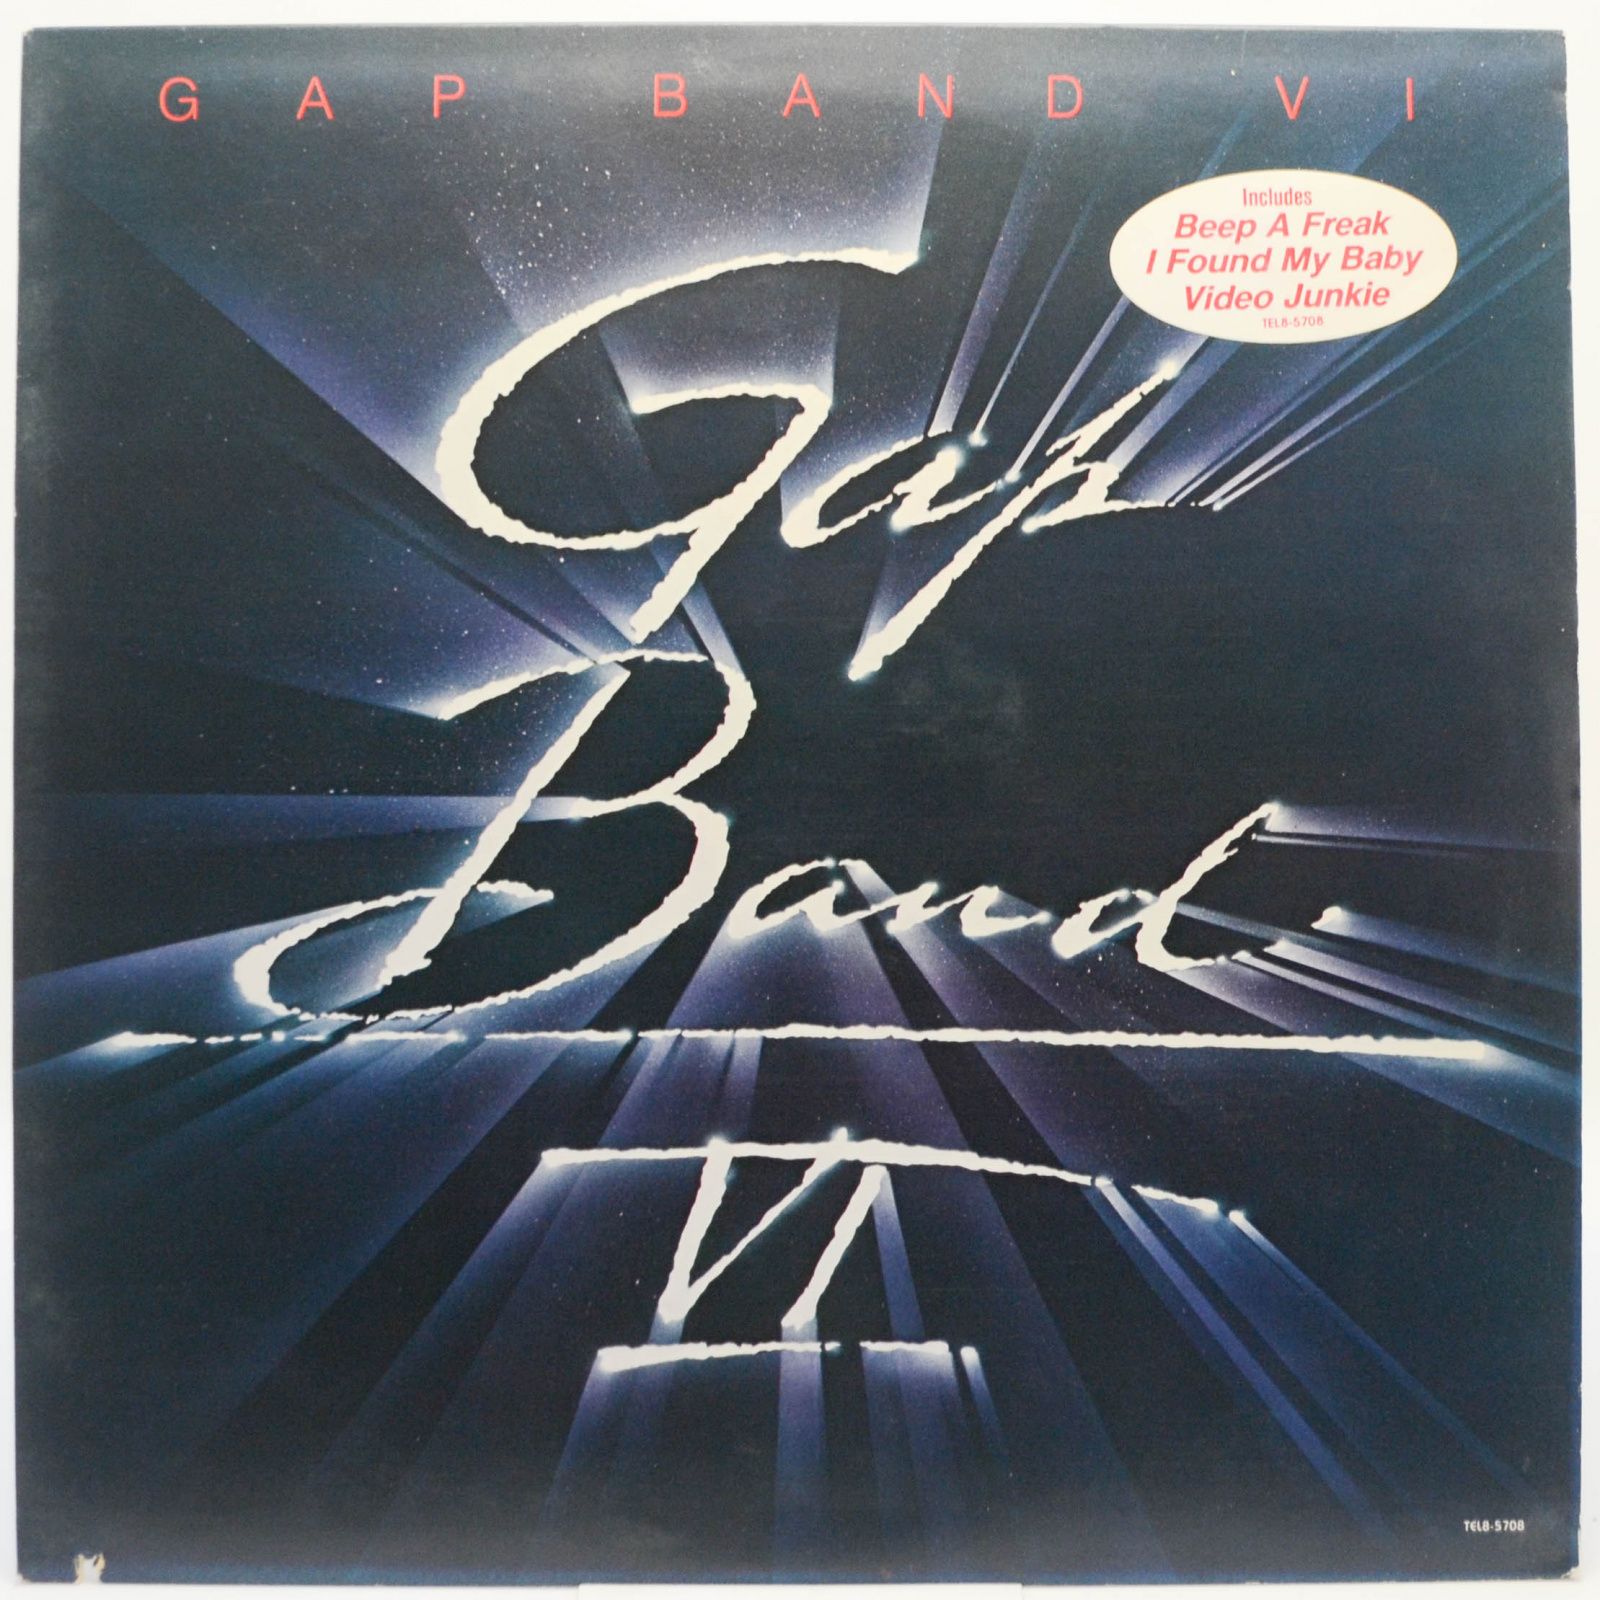 Gap Band — Gap Band VI, 1984